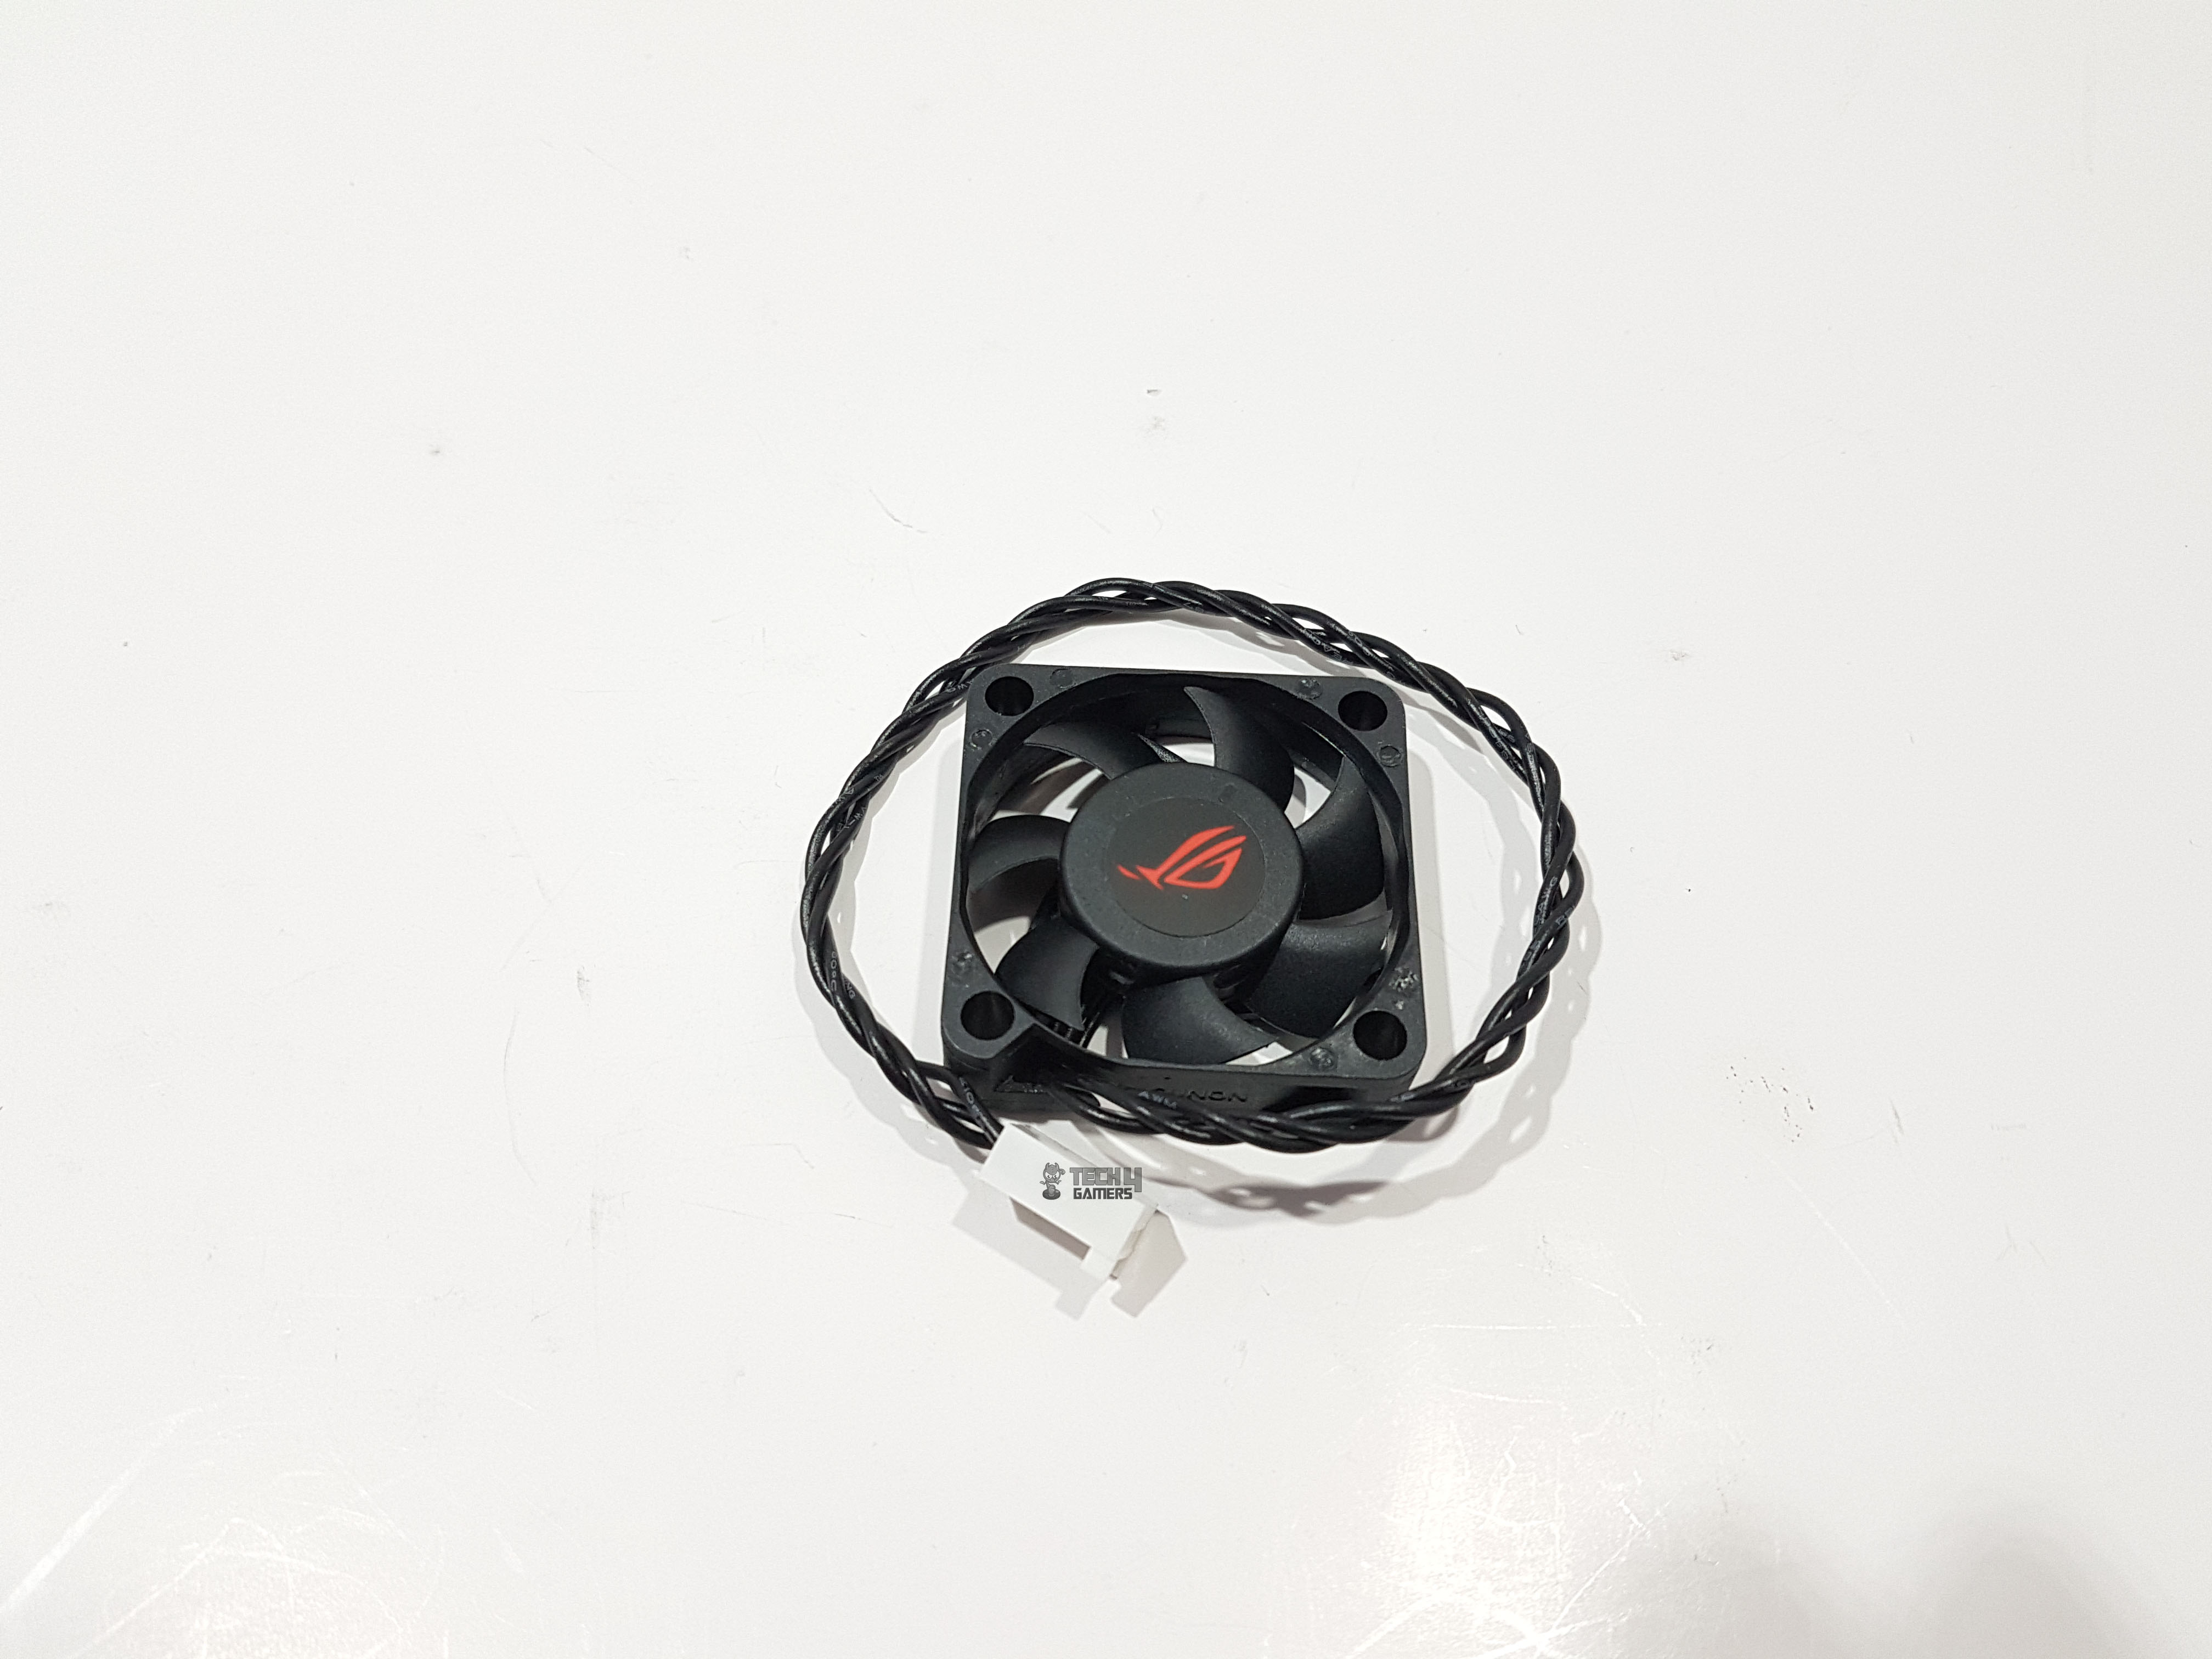 Z390-E cooling fan